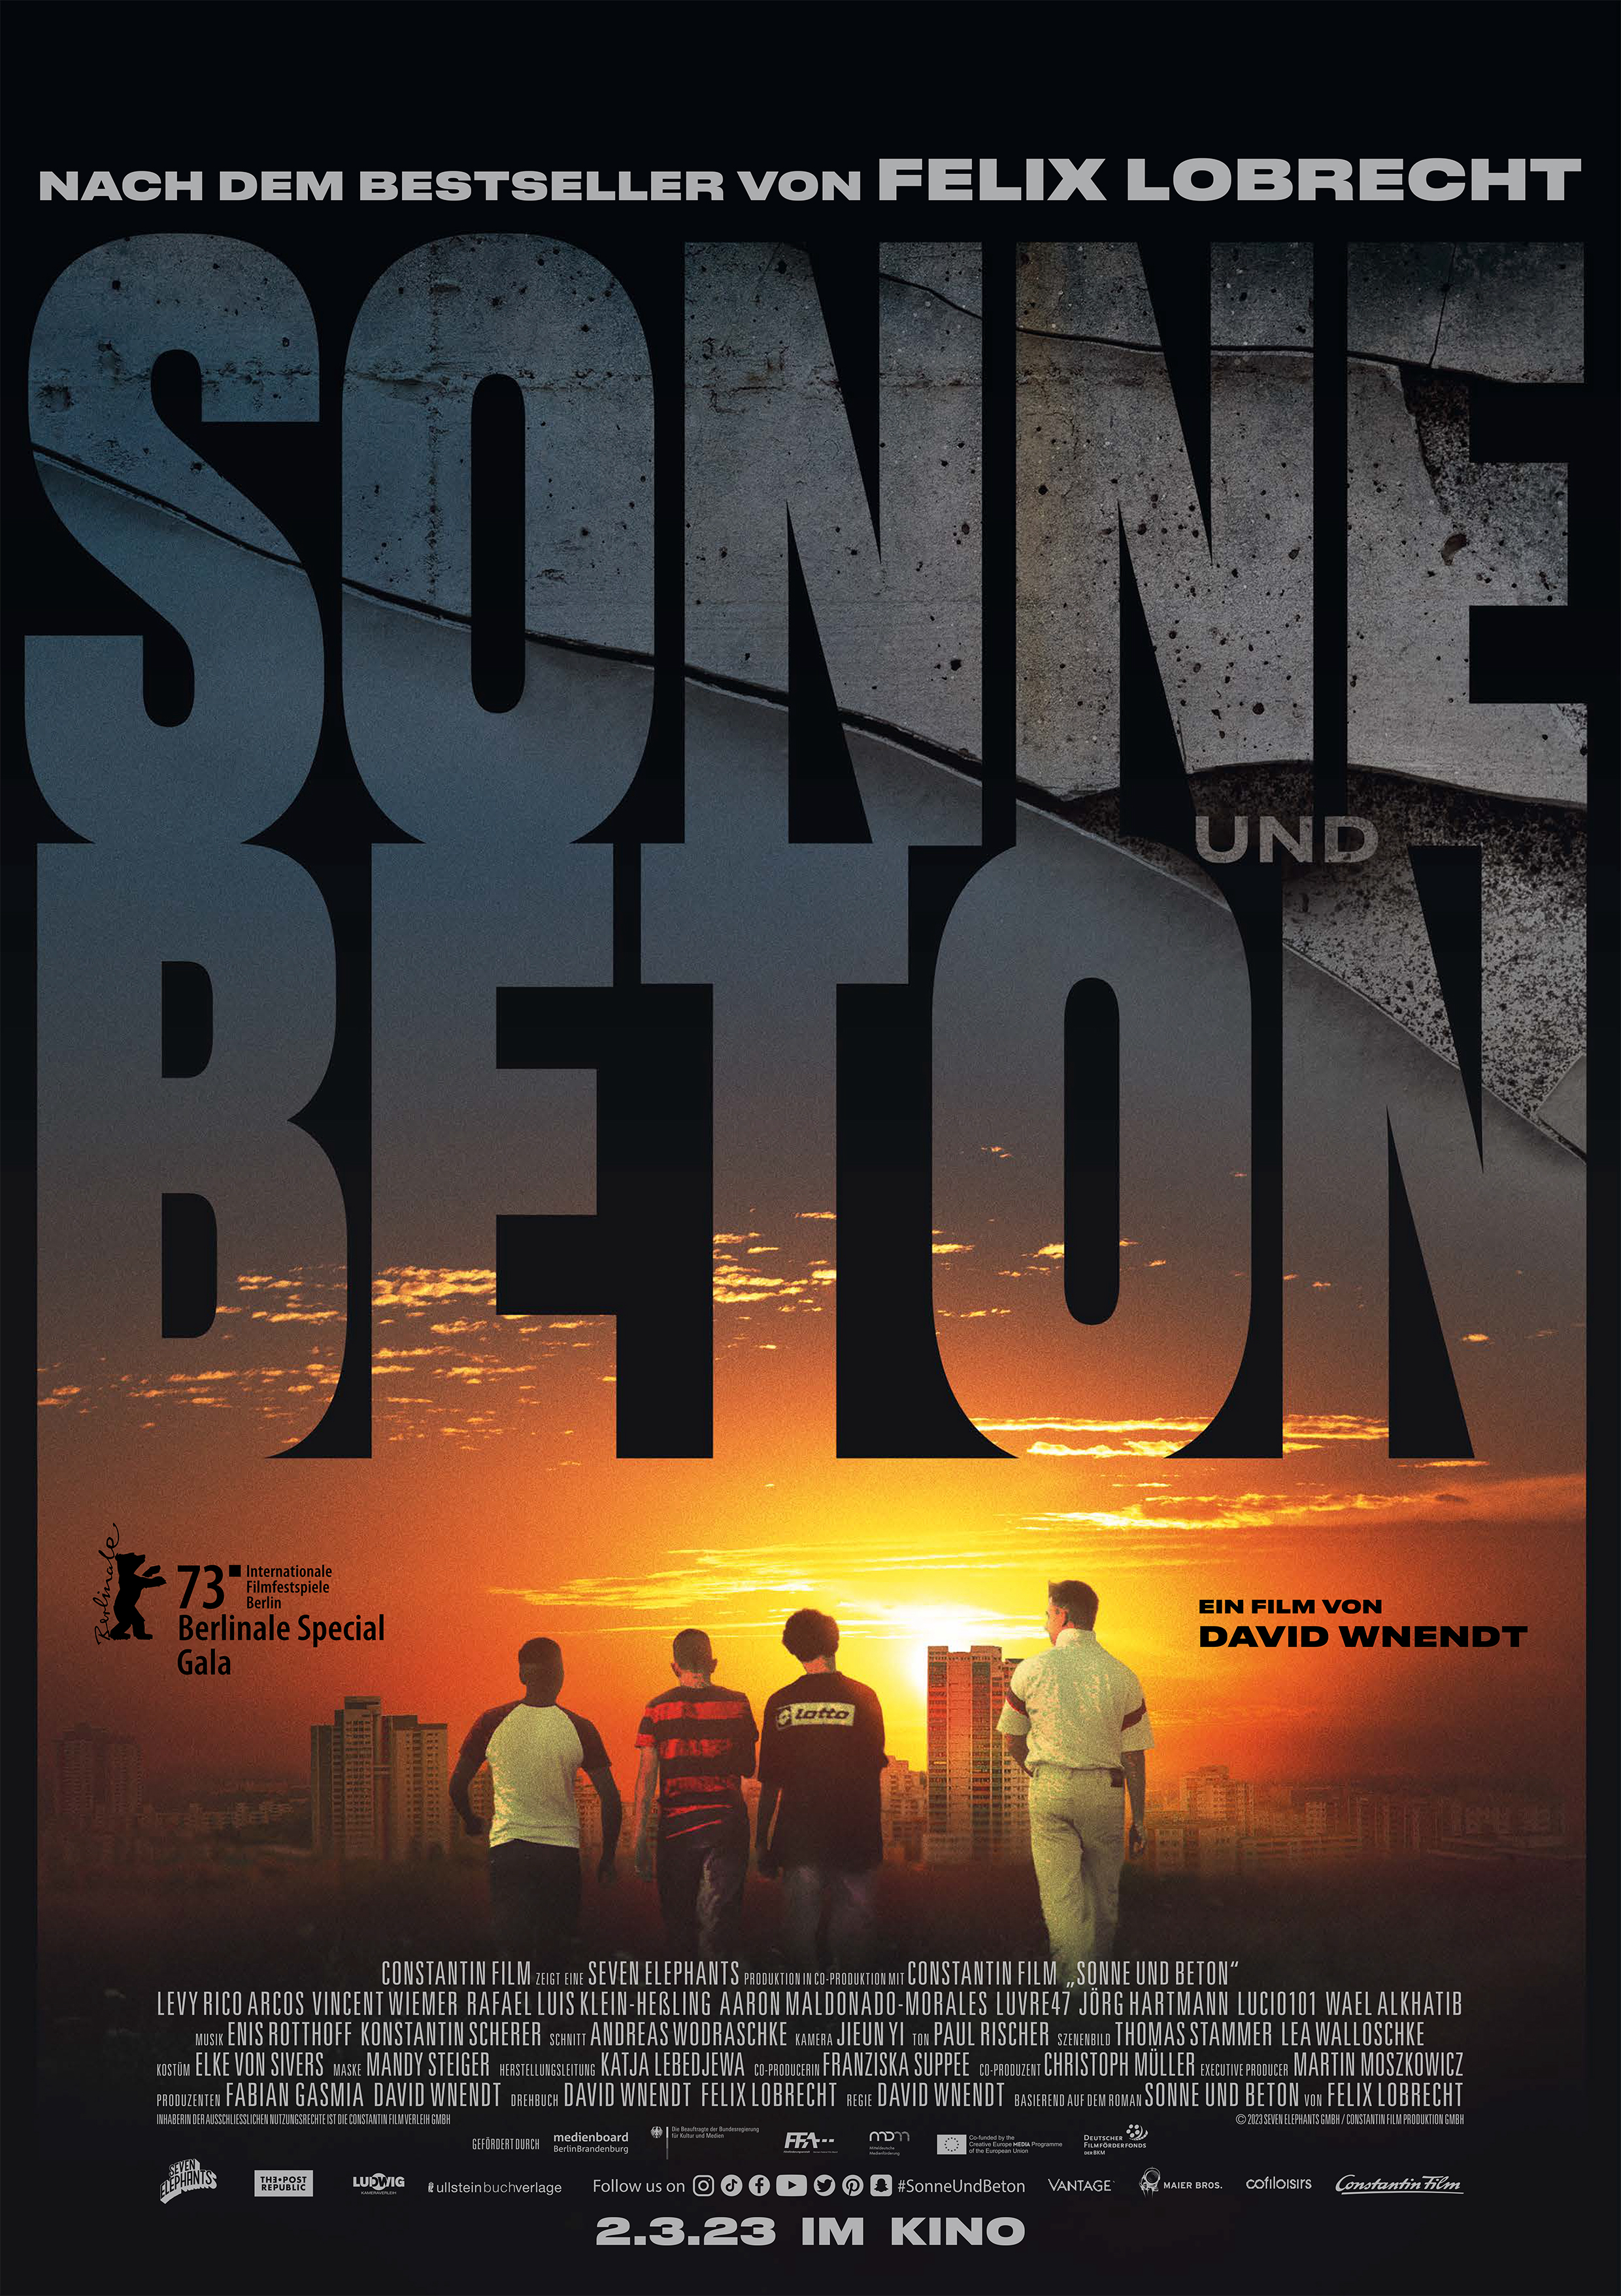 Lion - Der lange Weg nach Hause - Kinokalender Dresden